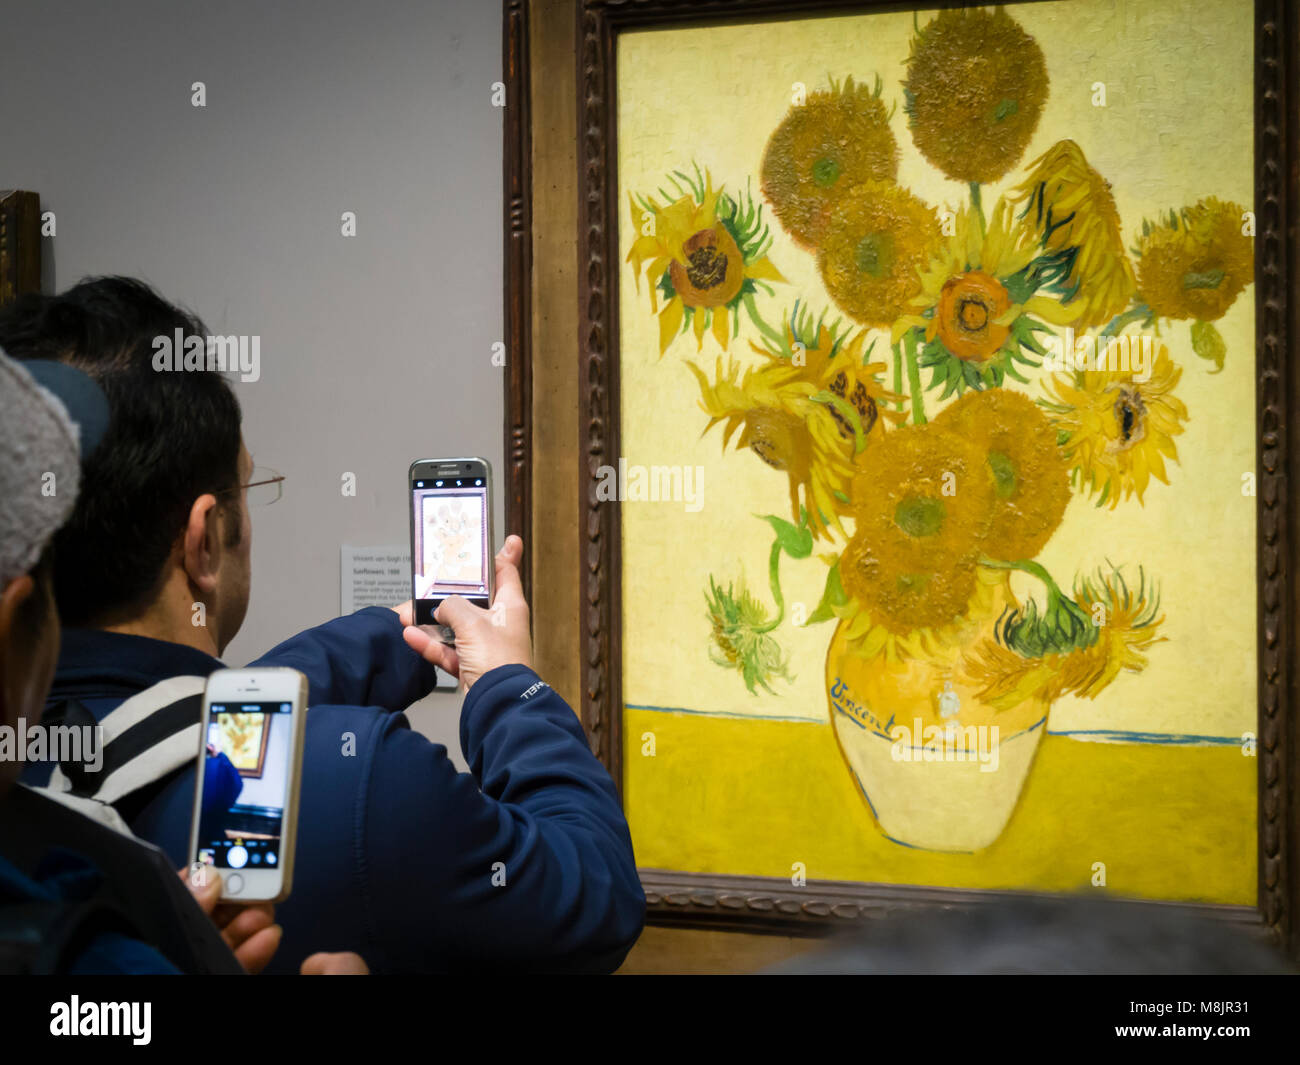 Londres, Reino Unido - 30 Dic 2017: Los visitantes de la Galería Nacional de Londres están utilizando sus smartphones para tomar fotografías de Vincent van Gogh's óleo "unflowers', una de las exhibiciones más famosas del museo. Foto de stock